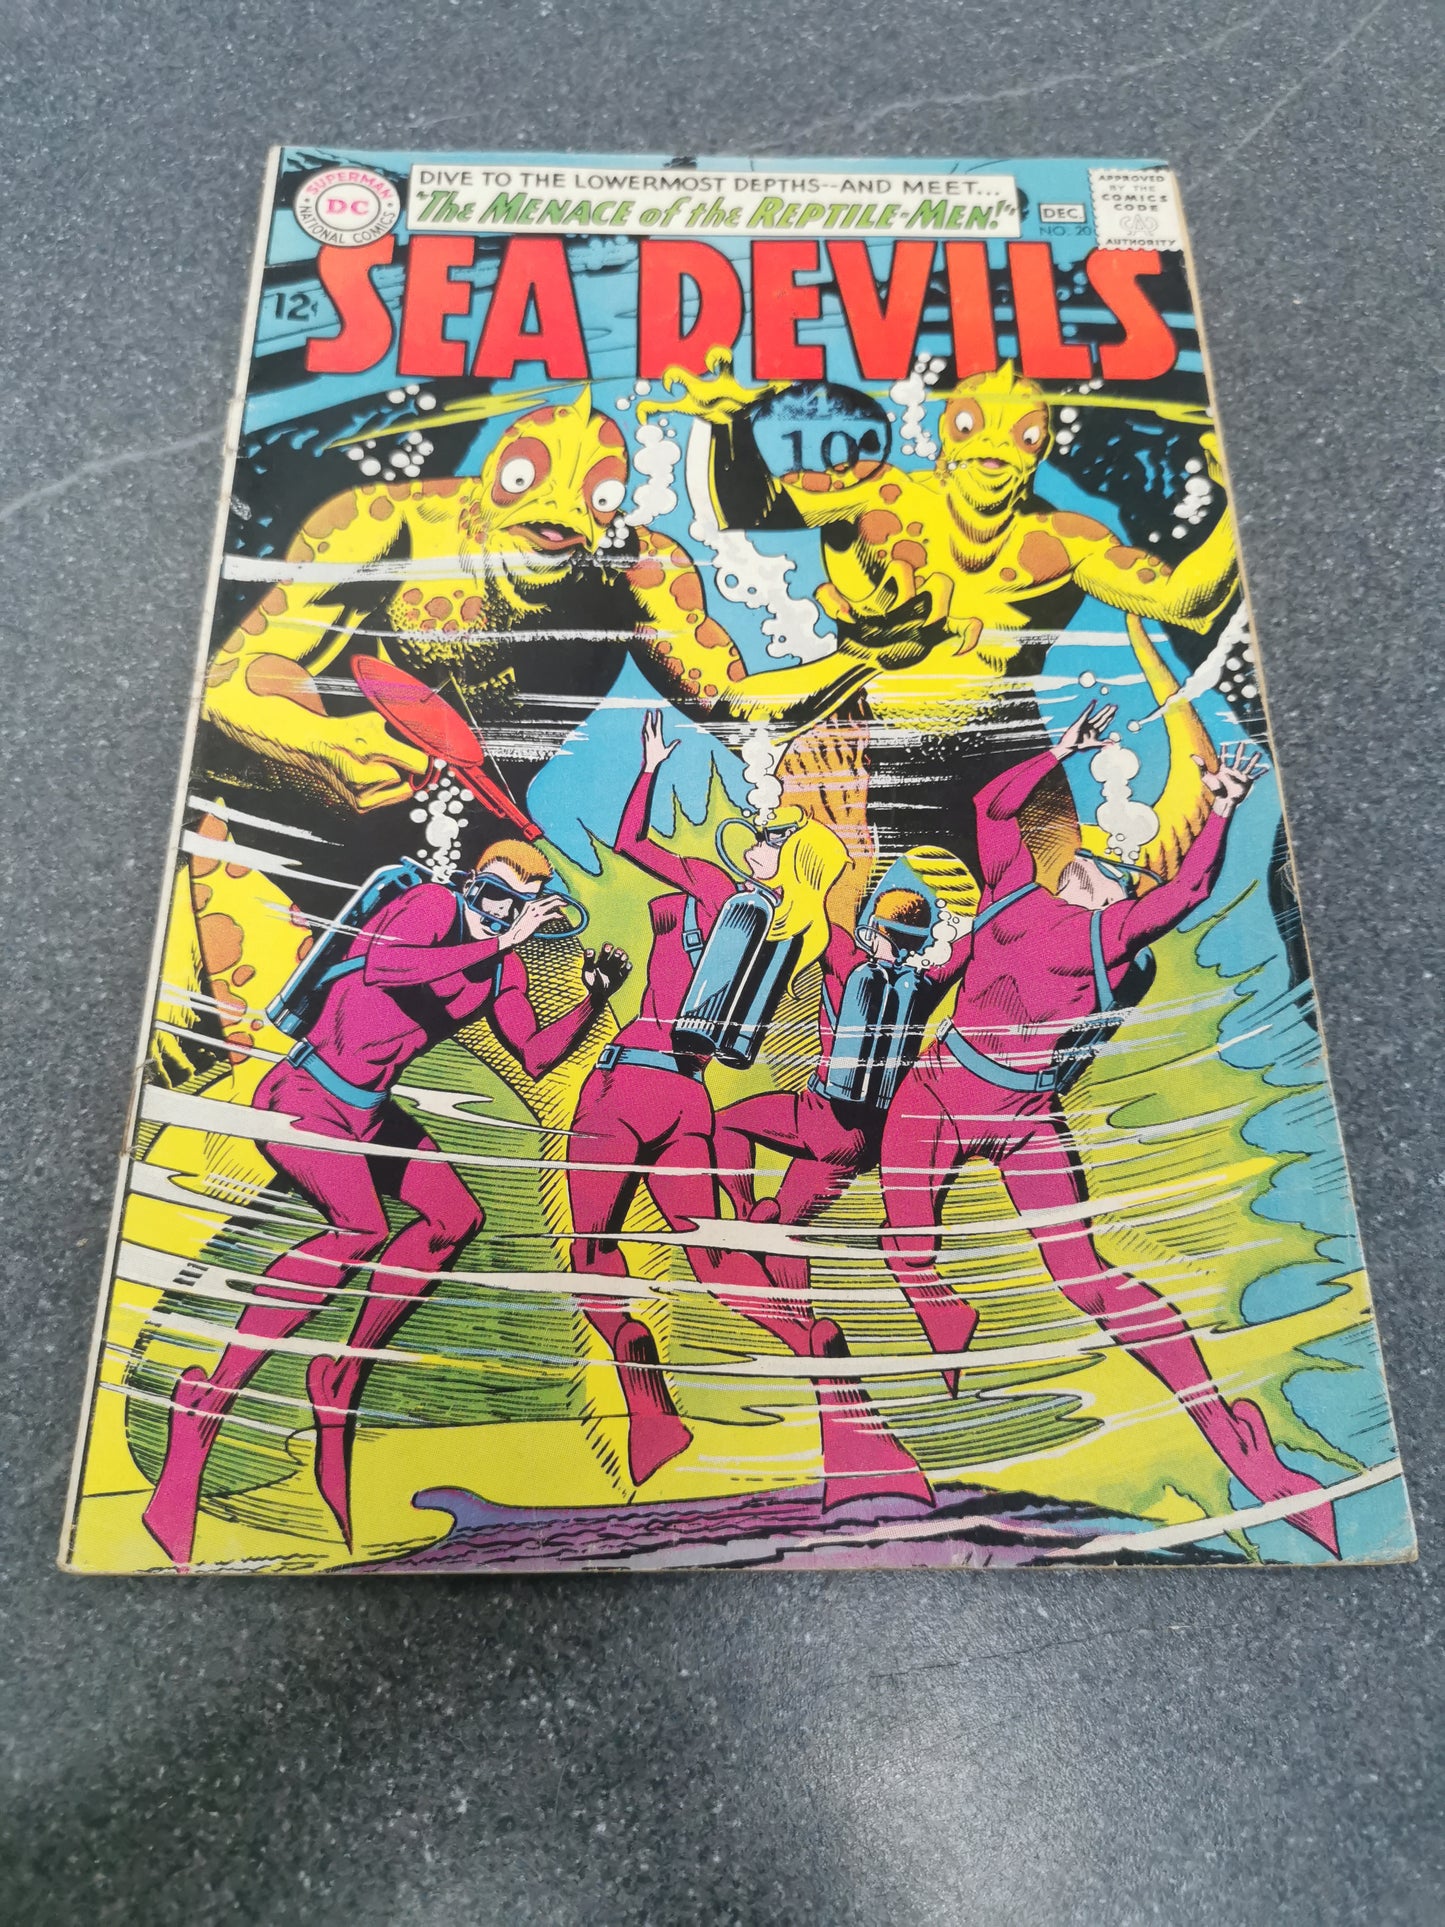 Sea Devils #20 1964 DC comic